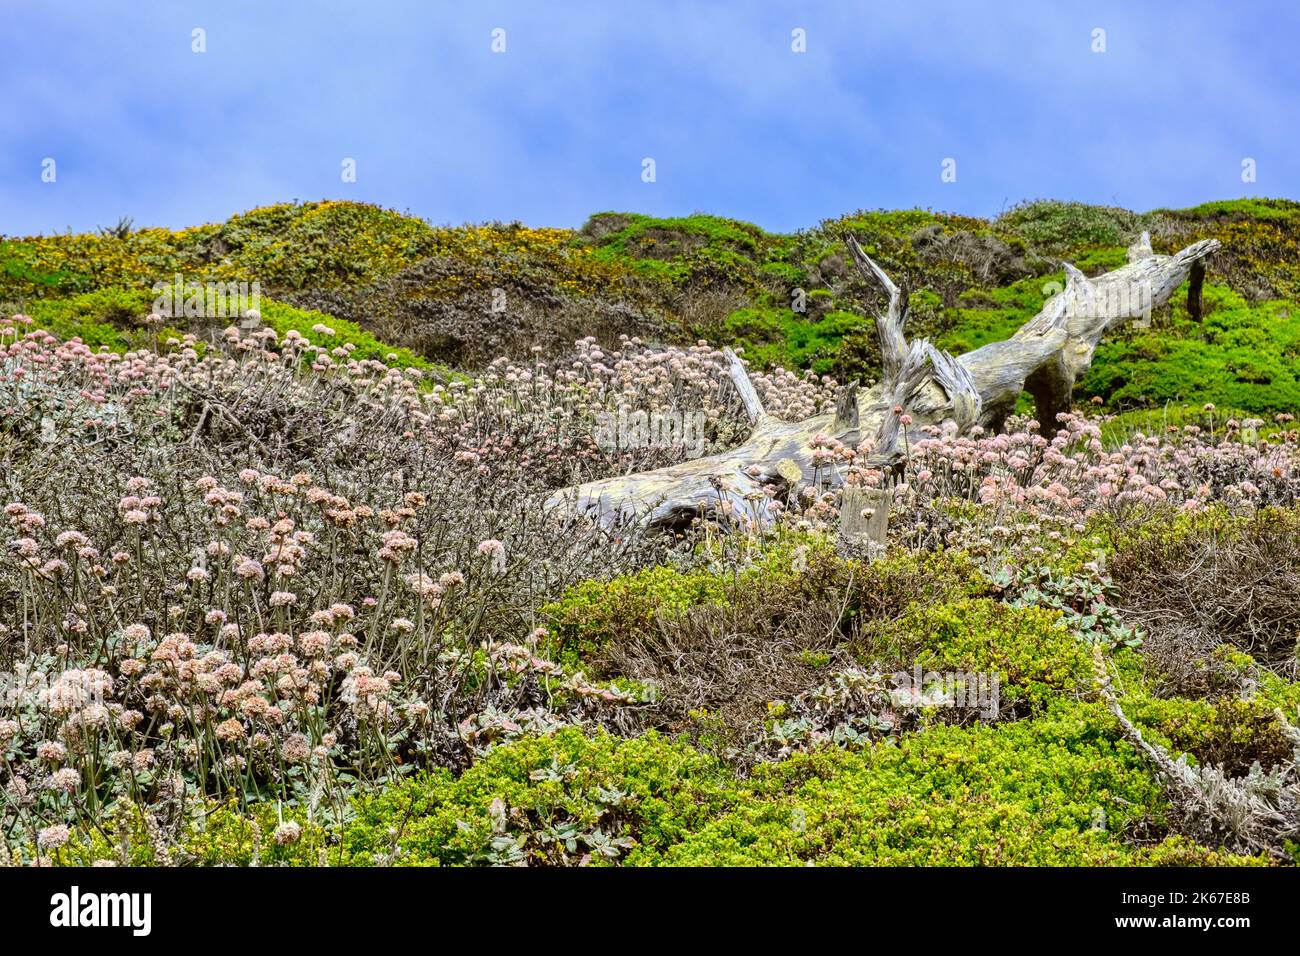 Un vecchio ceppo sulla scogliera sabbiosa a Lands End, San Francisco, California, USA, con varie erbe e piante macinate. Foto Stock